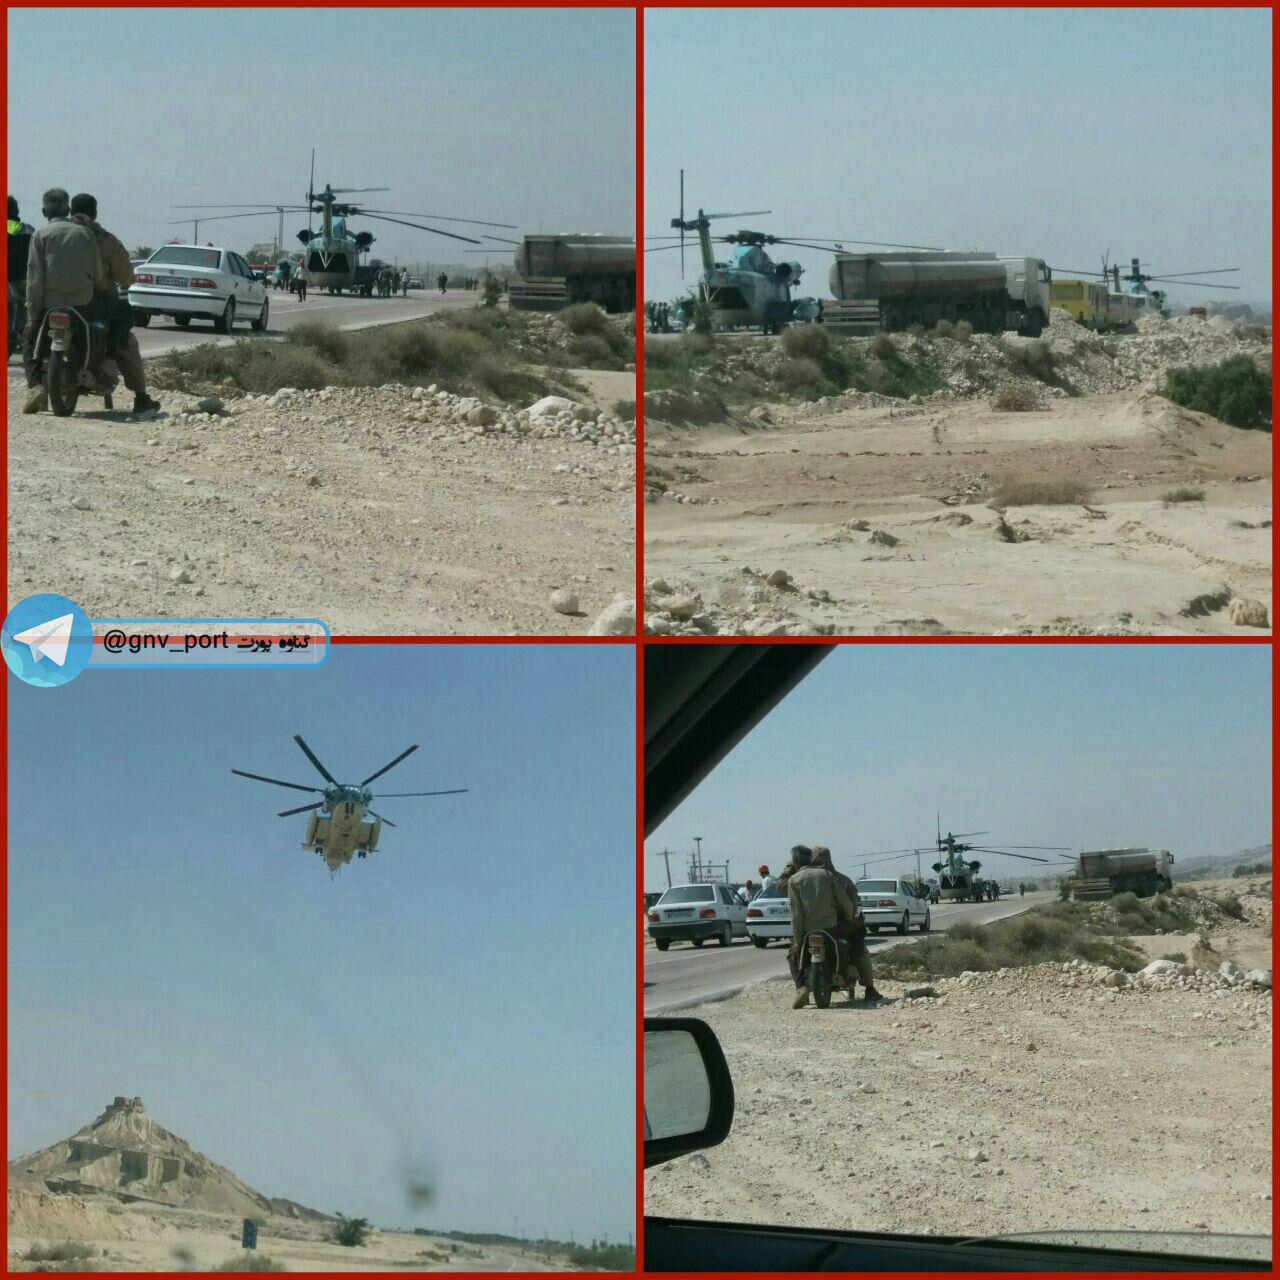 فرود اضطراری بالگرد ارتش در بوشهر/عکس